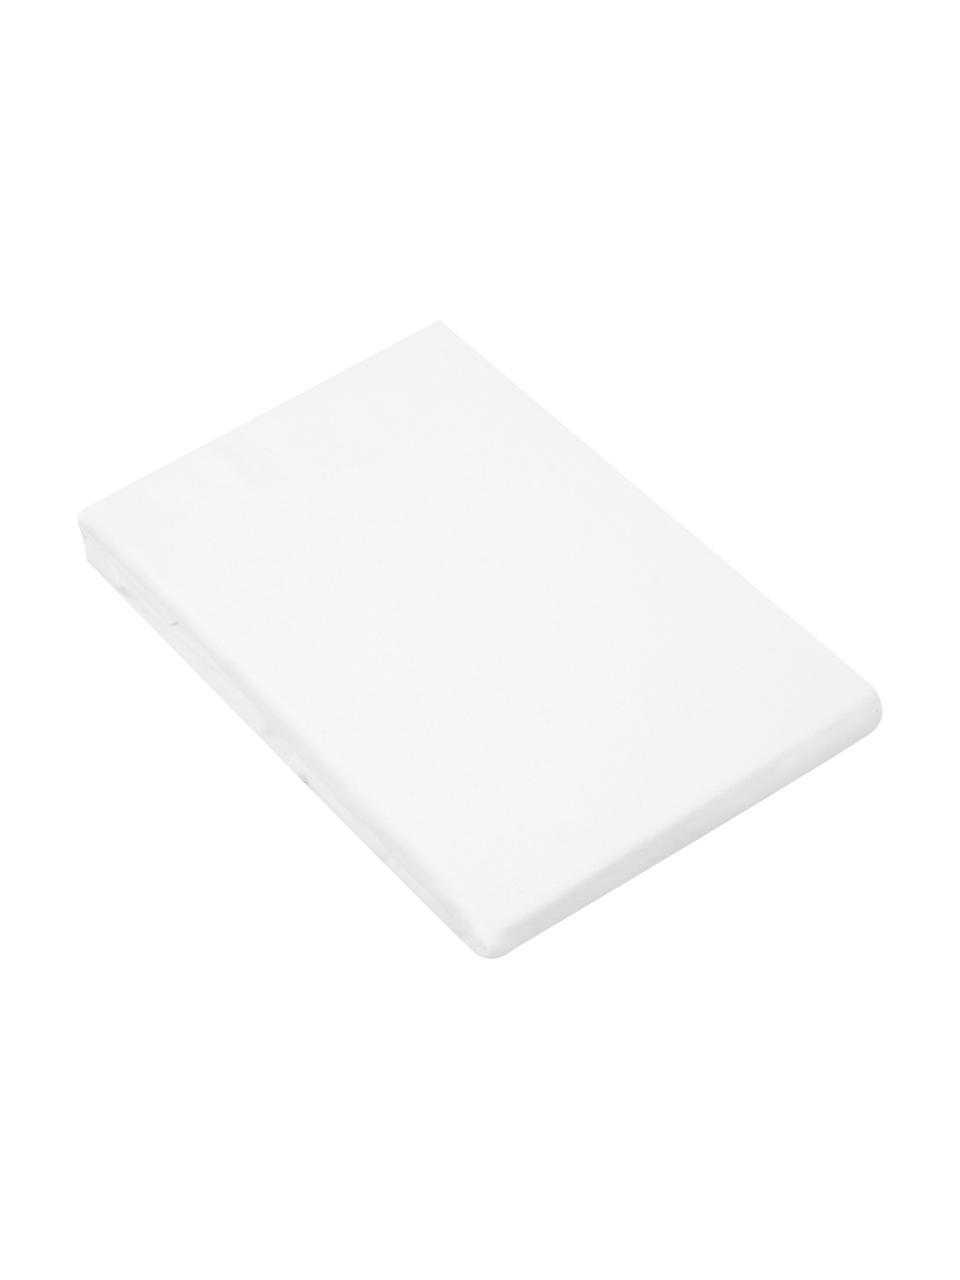 Flanell-Spannbettlaken Biba in Weiß, Webart: Flanell Flanell ist ein k, Weiß, B 90 x L 200 cm